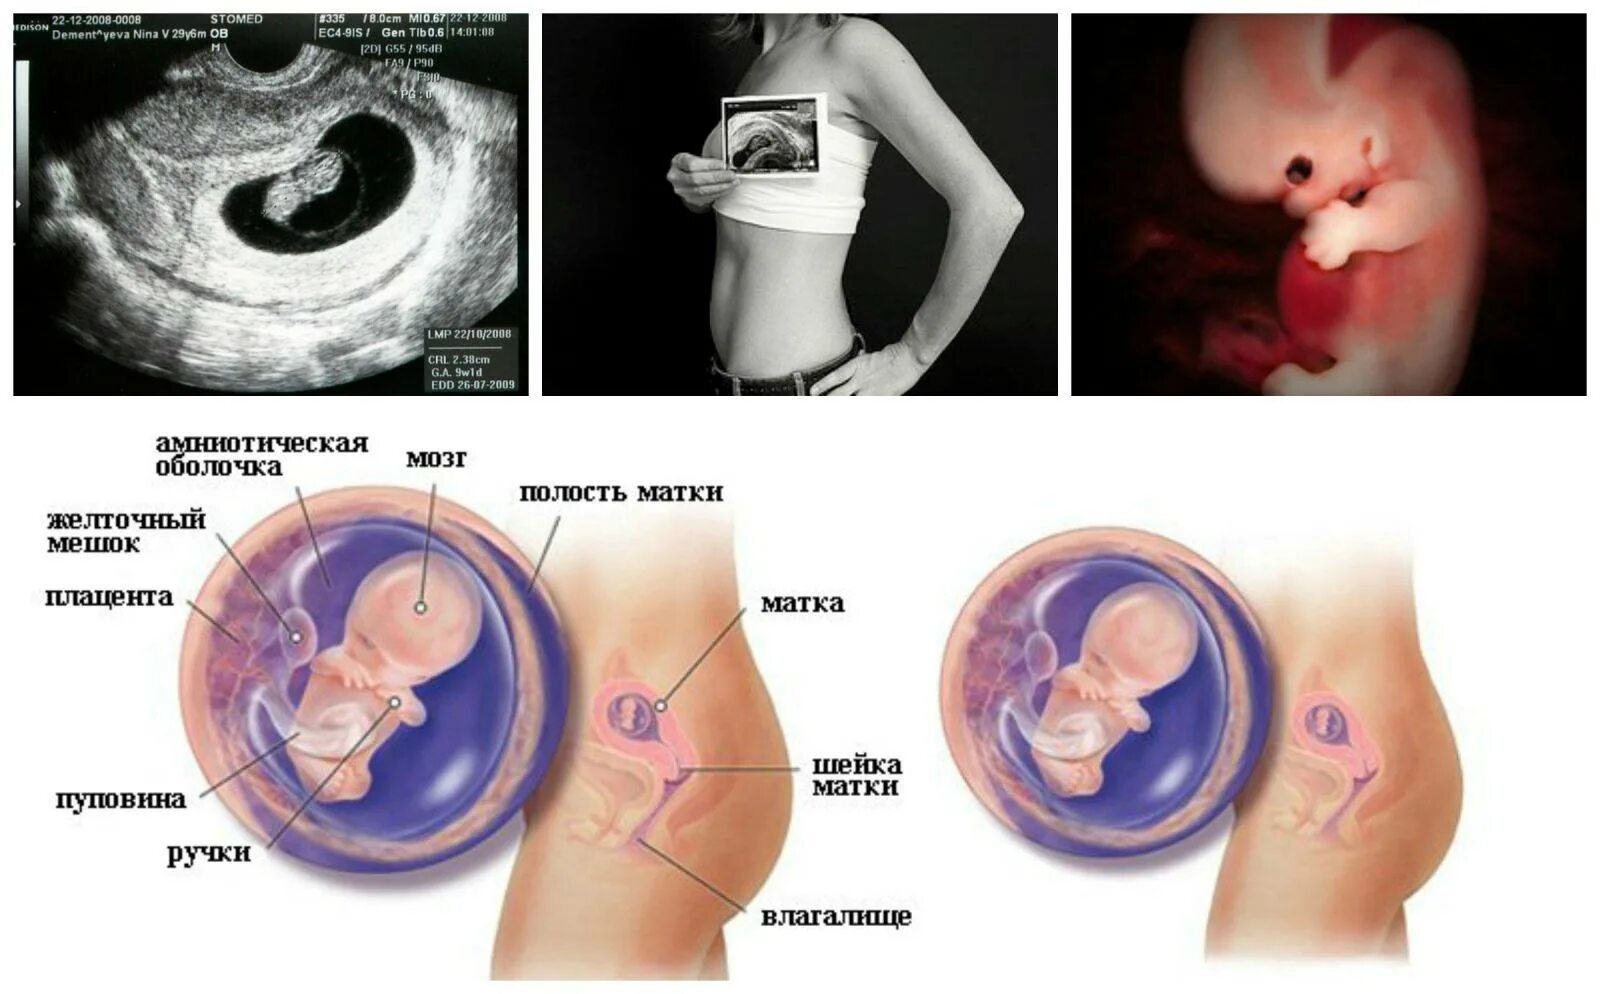 9 неделя даты. Эмбрион в 8-9 недель беременности. Плод ребенка на 8-9 неделе беременности. Как выглядит эмбрион ребёнка в 9 недель. 8-9 Недель беременности размер плода.